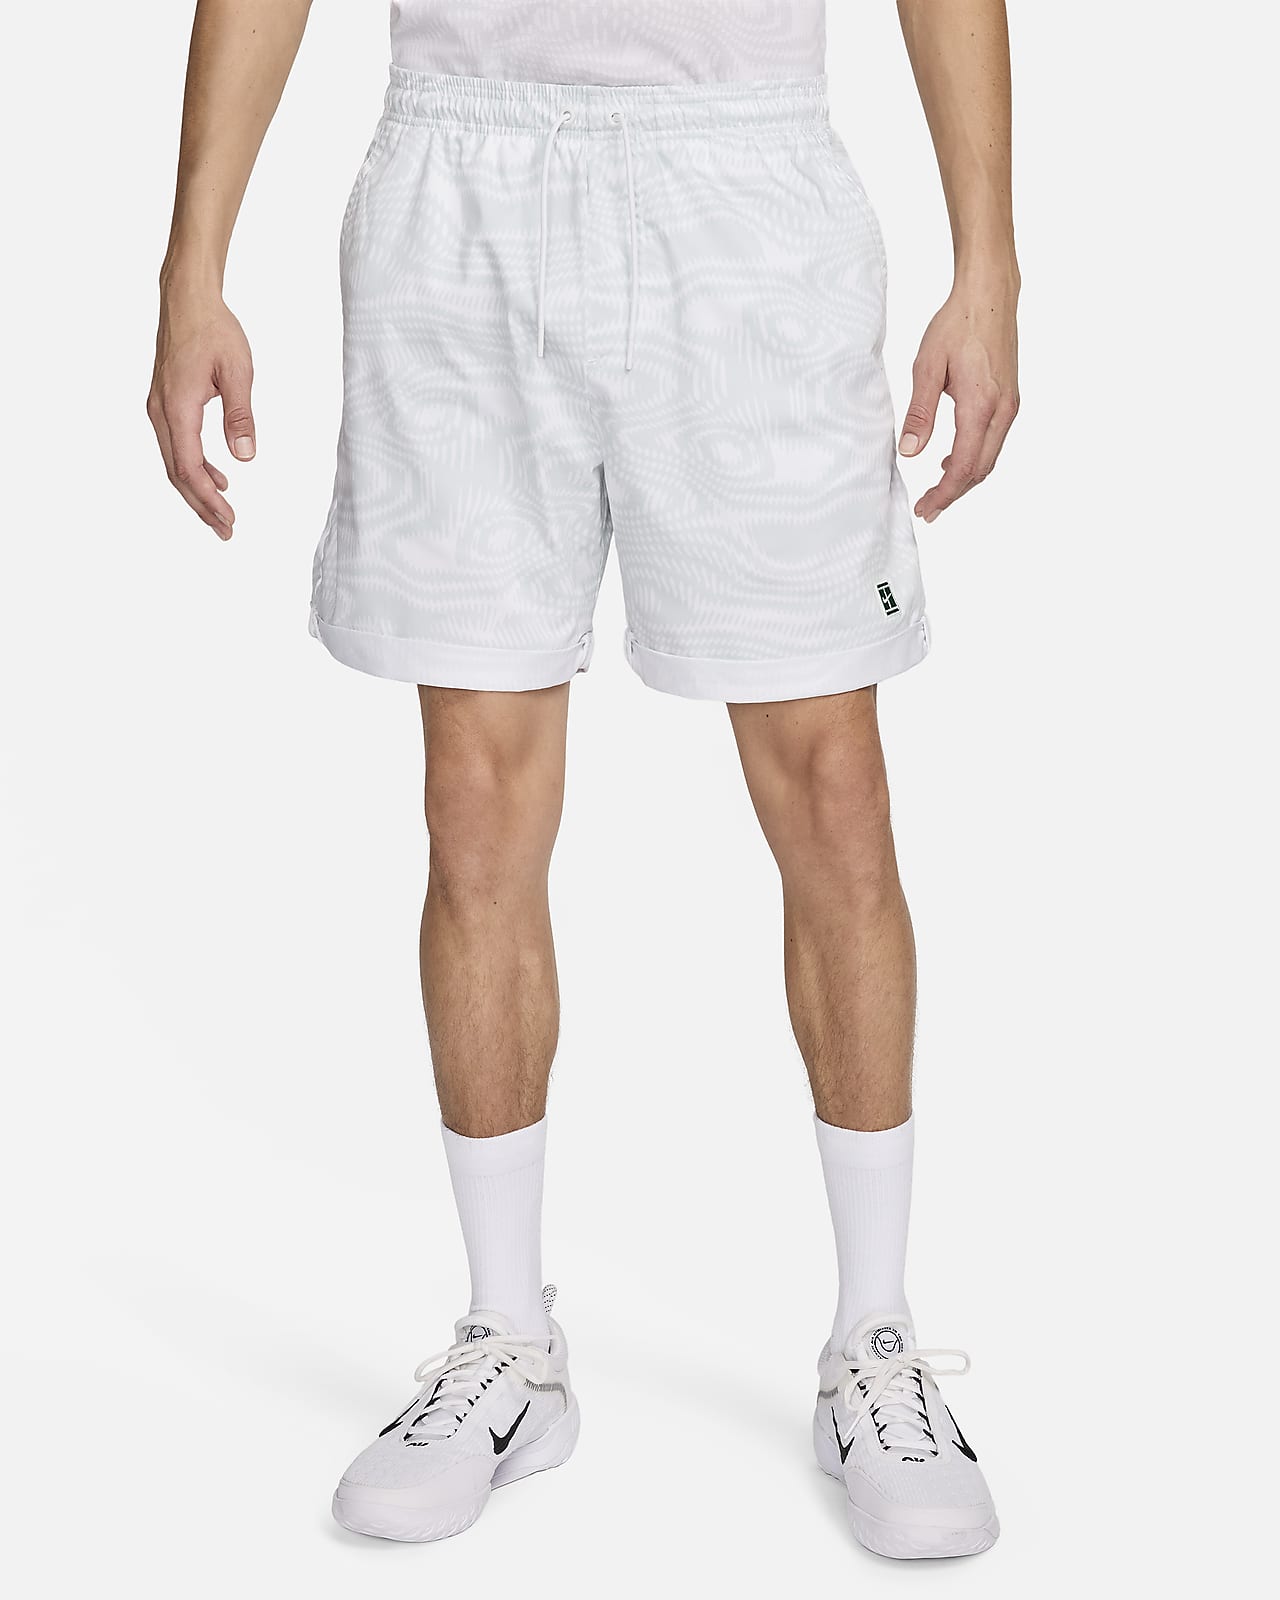 NikeCourt Heritage Dri-FIT-tennisshorts (15 cm) med print til mænd